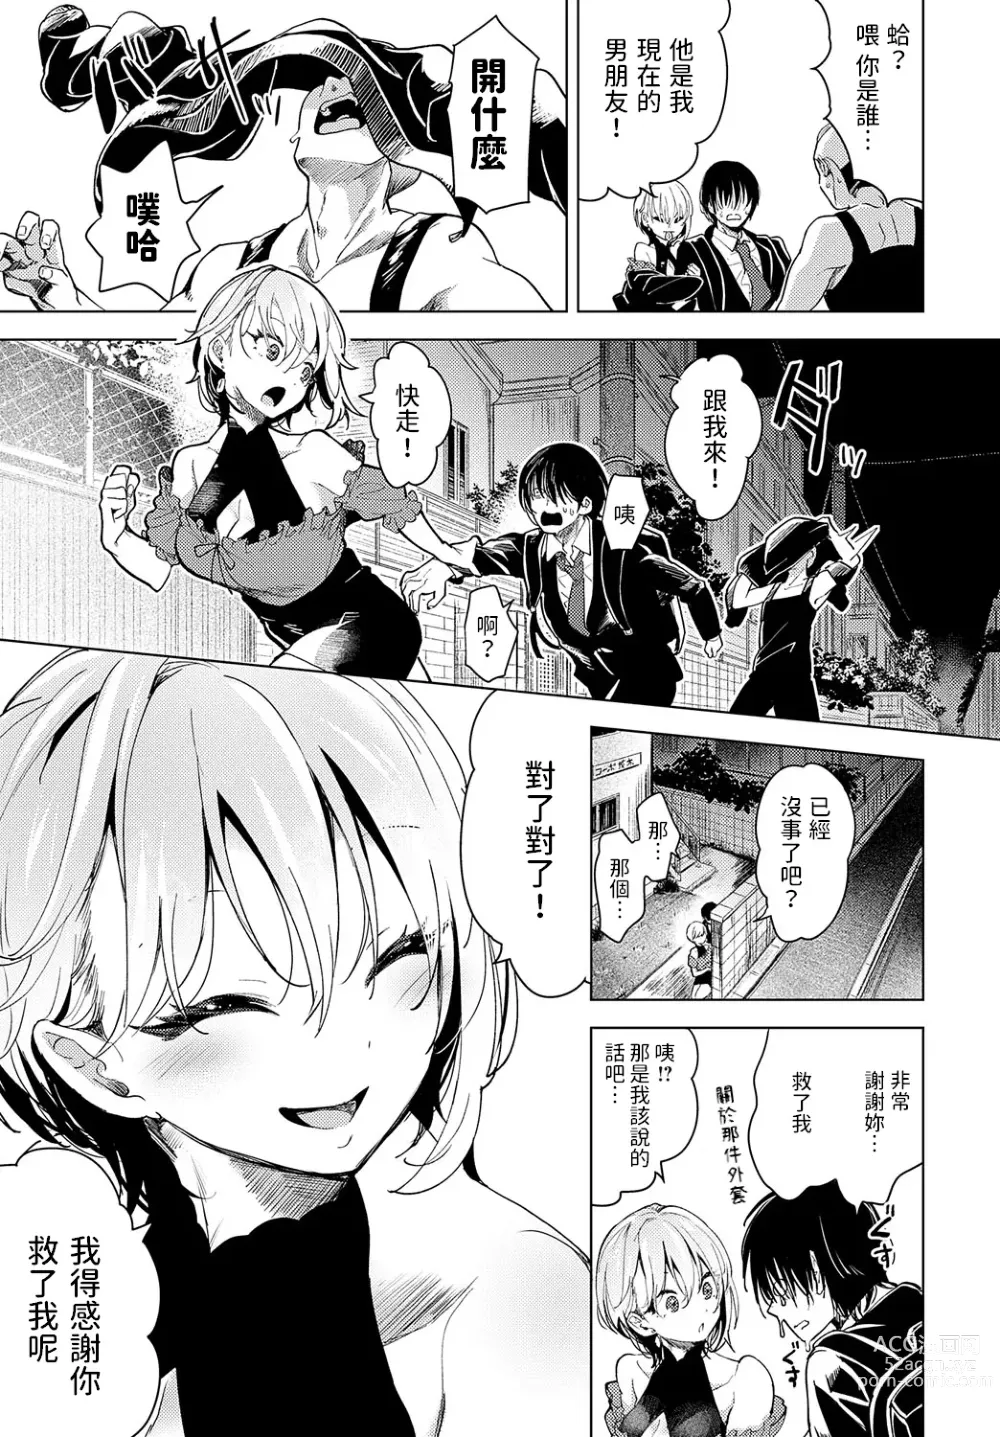 Page 3 of manga Tsuru no Ongaeshi